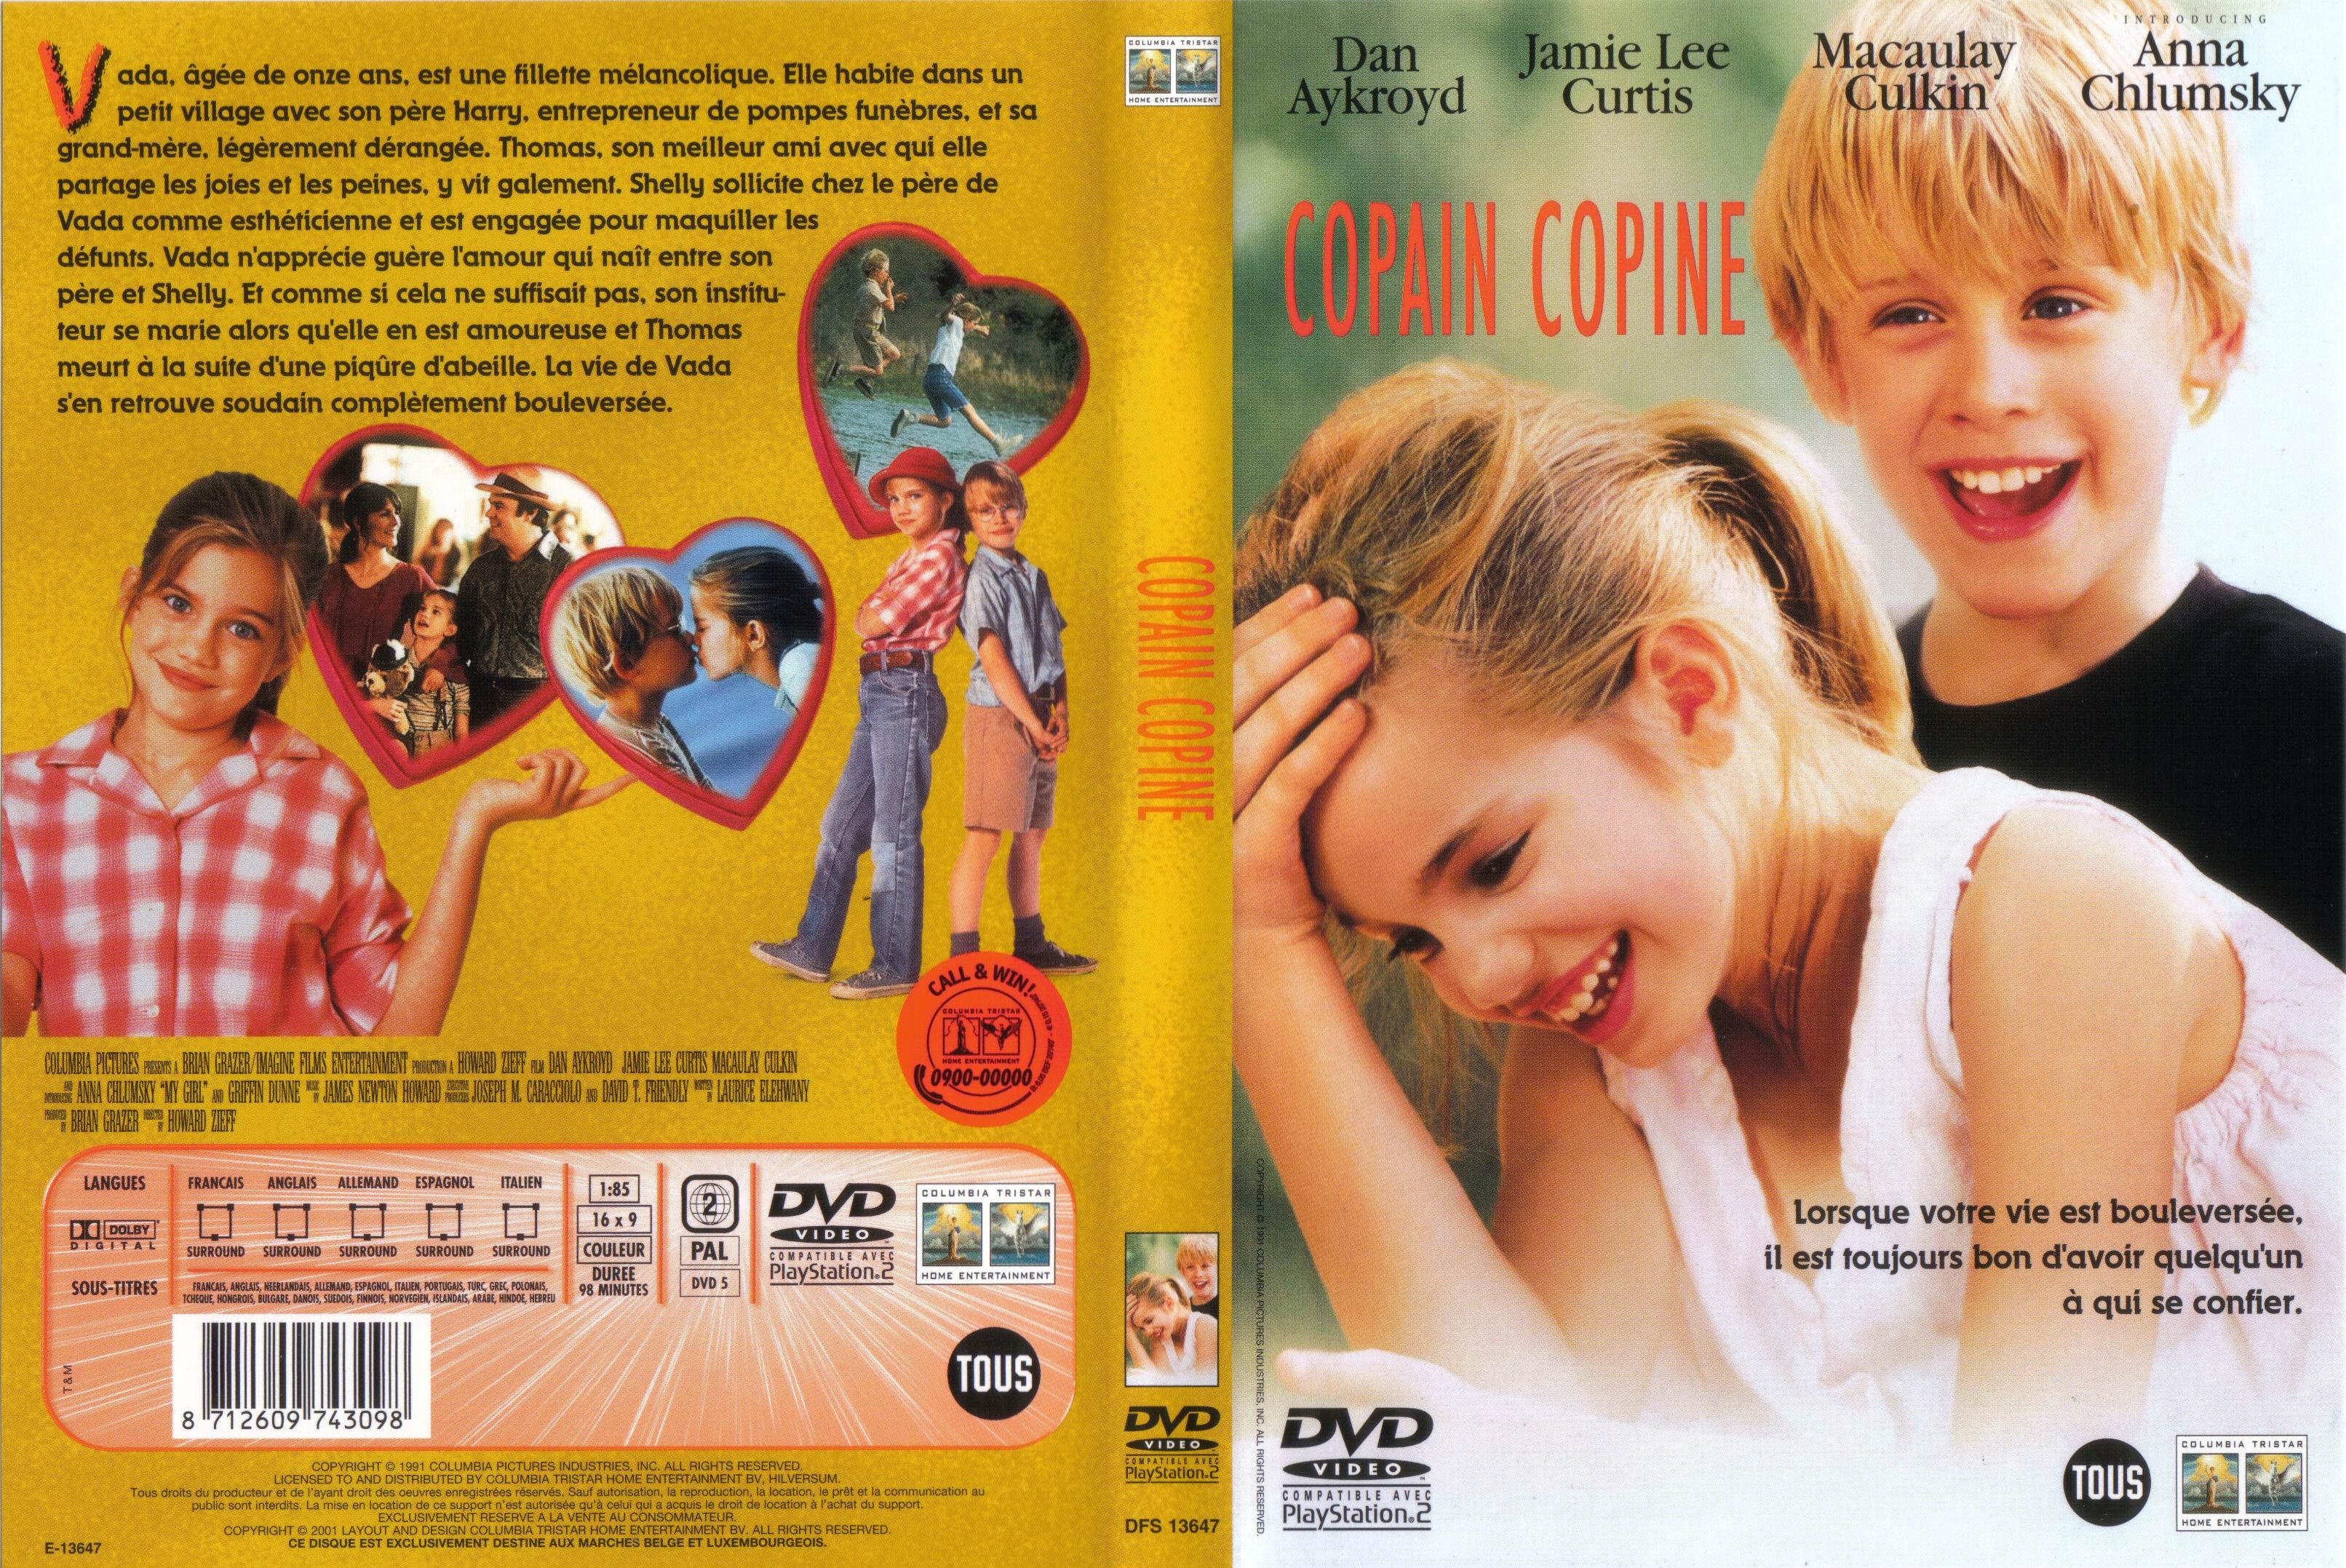 Jaquette DVD Copain copine